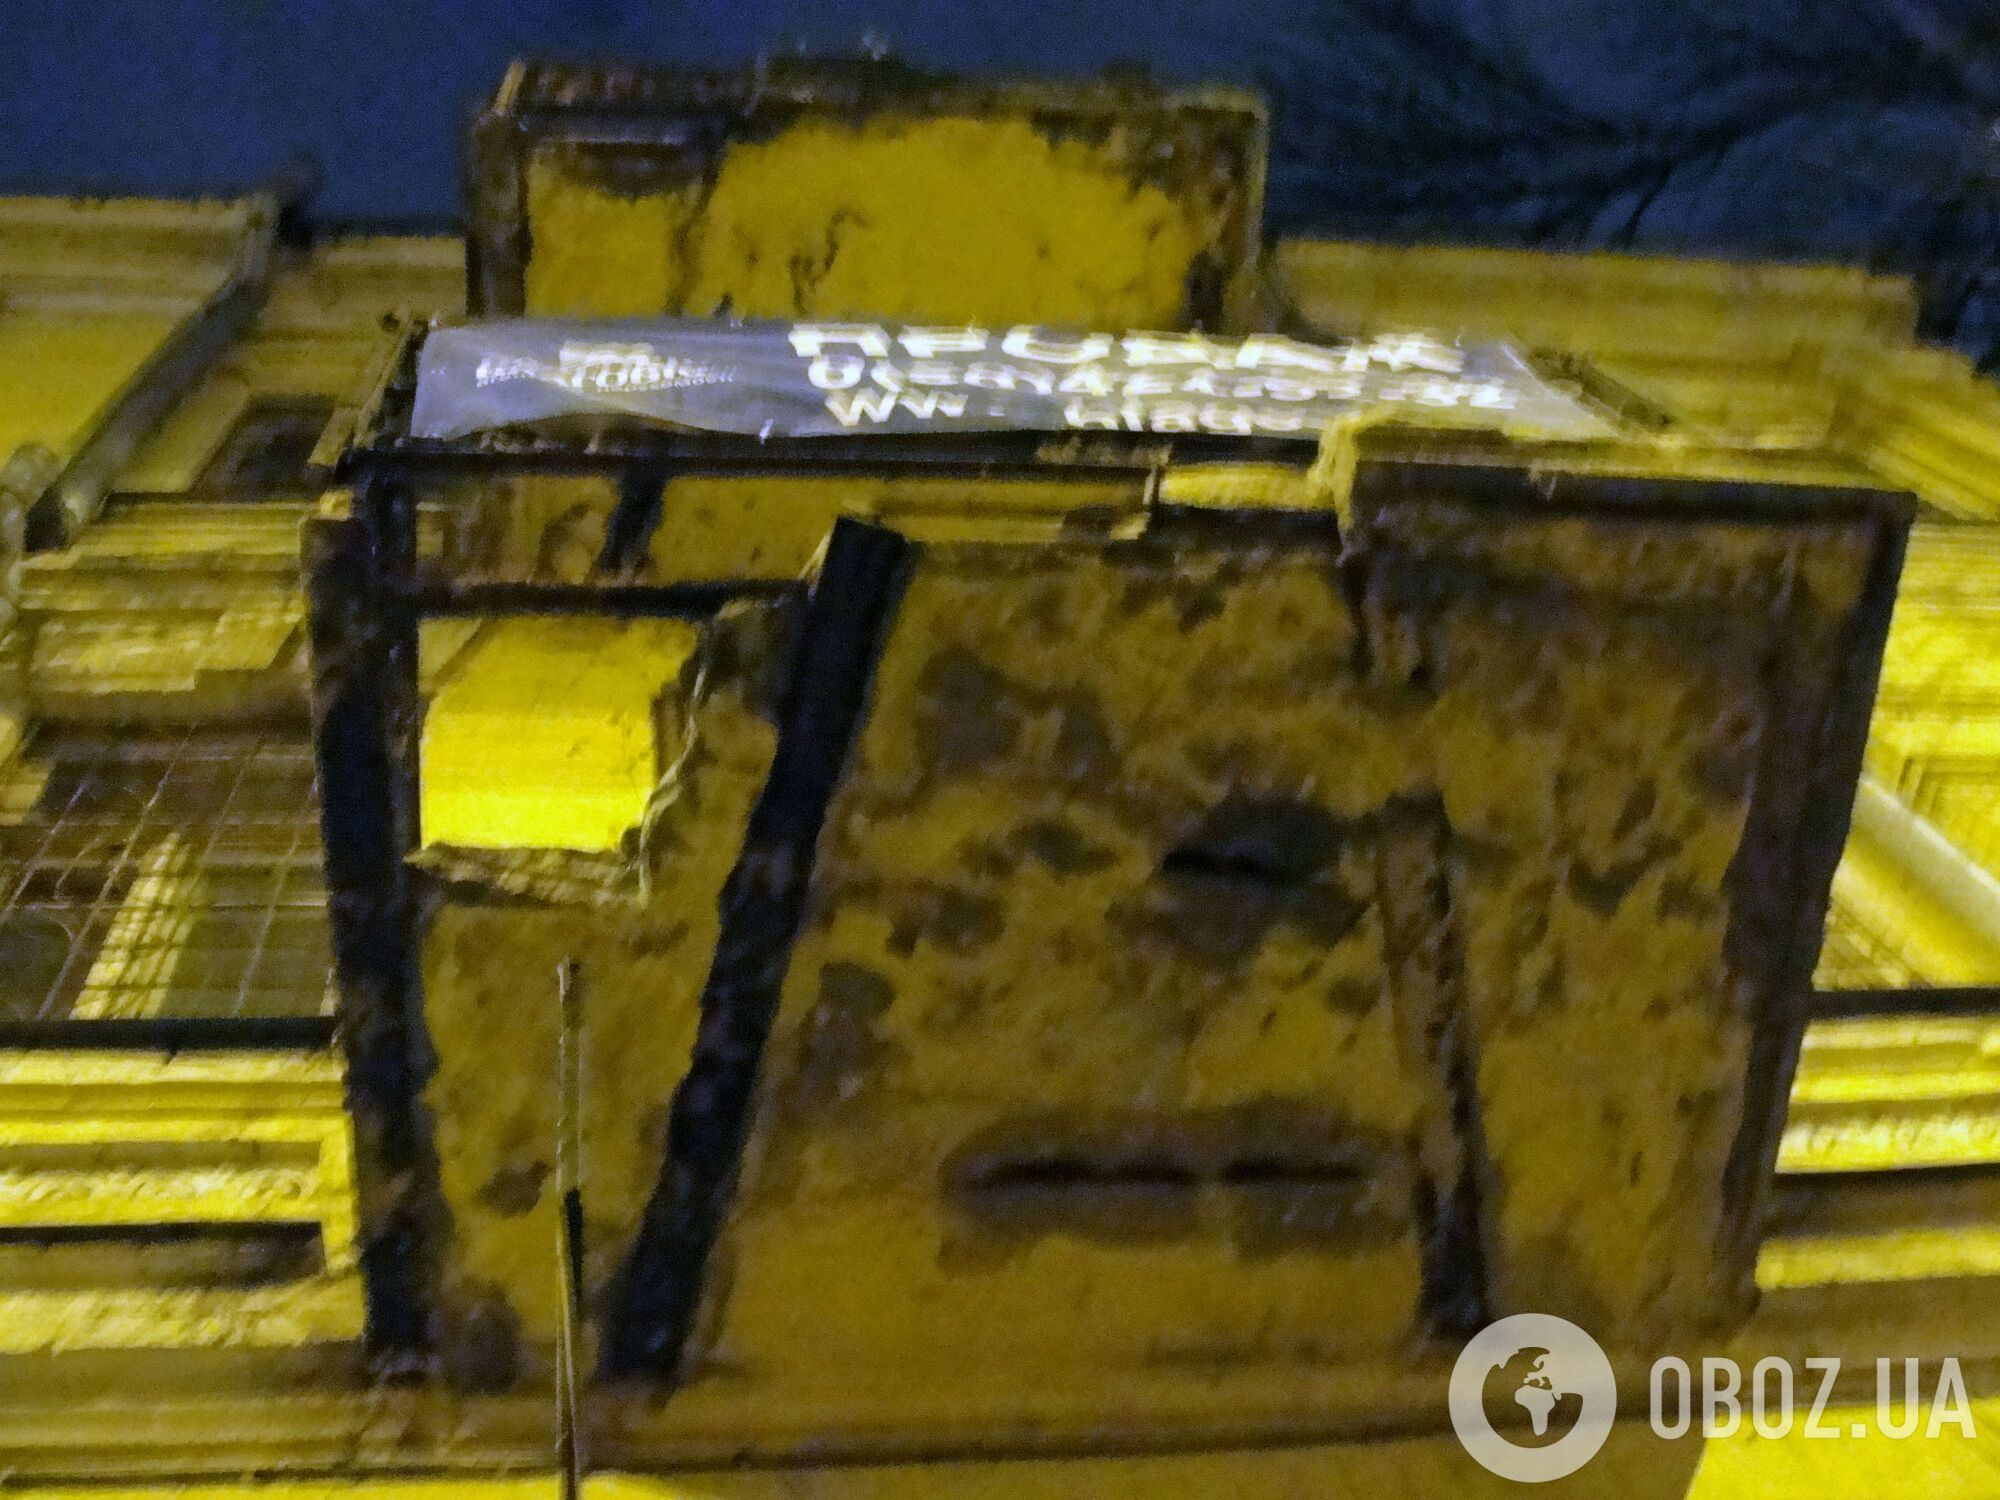 Аварийный балкон на ул. Малая Житомирская ничем не огражден